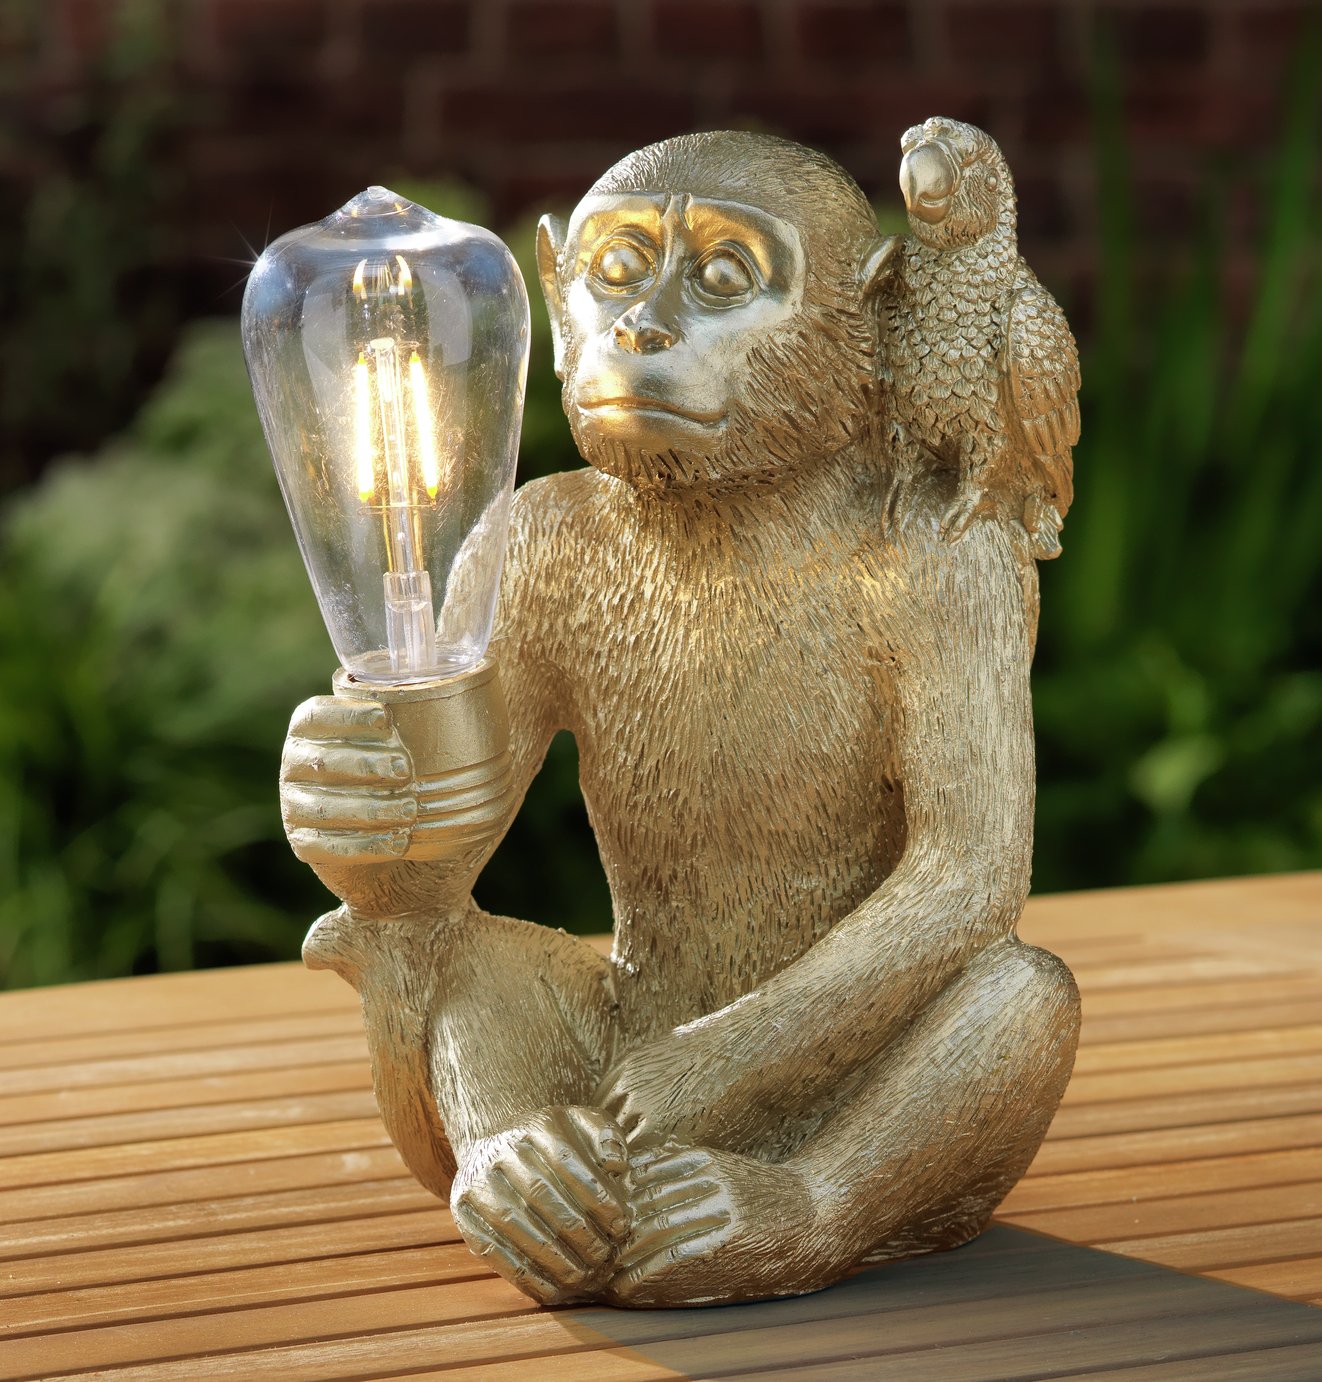 Argos Home Wilderness Solar Monkey LED Light Review